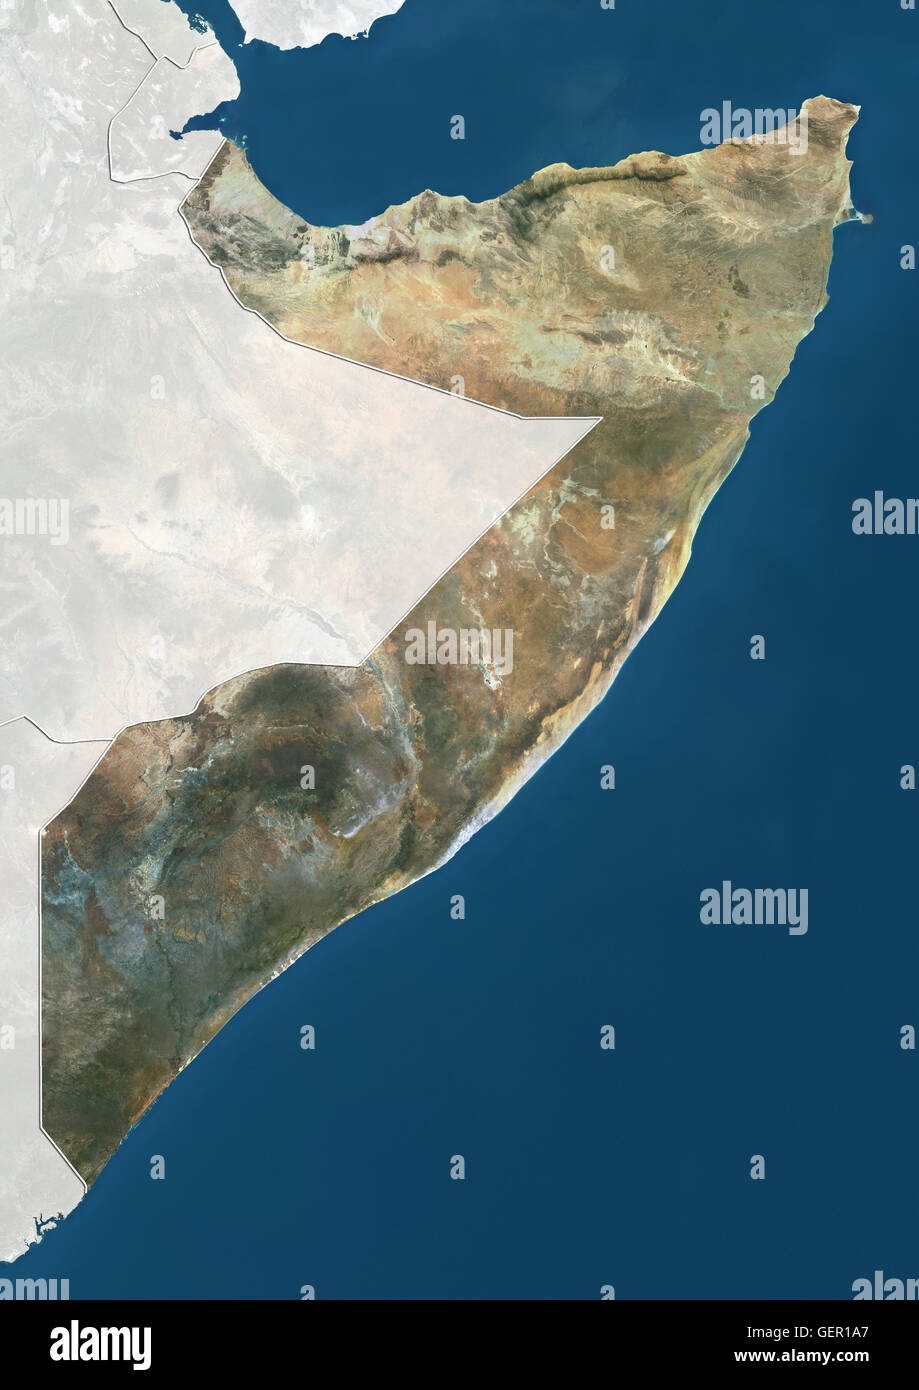 Satellitenansicht von Somalia (mit Ländergrenzen und Maske). Dieses Bild wurde aus Daten von Landsat-Satelliten erworben erstellt. Stockfoto